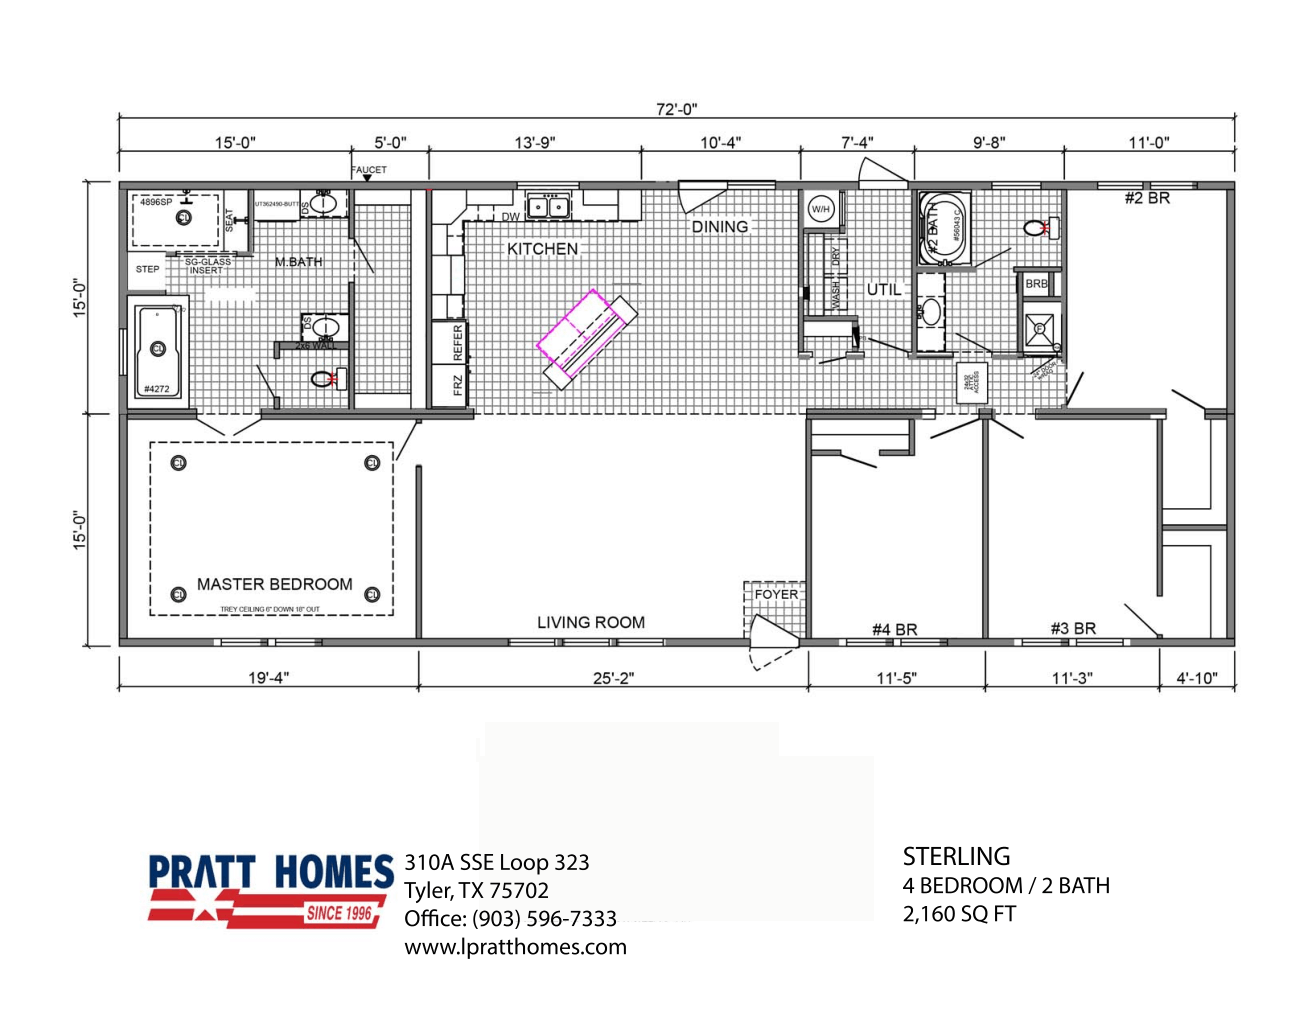 Floor Plan for house model Sterling Pratt Homes, Tyler, Texas